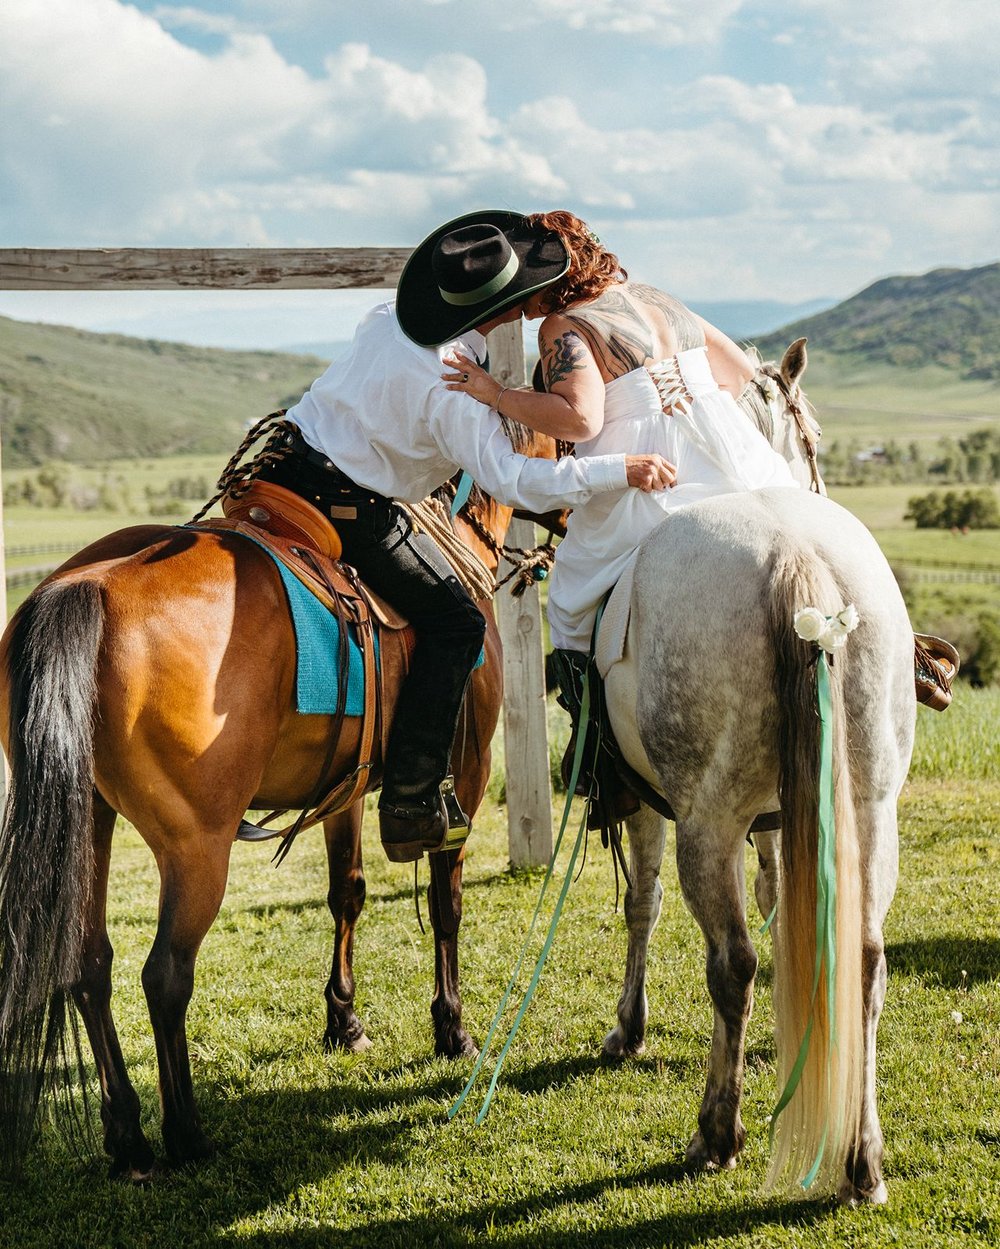 Couple kissing on horseback